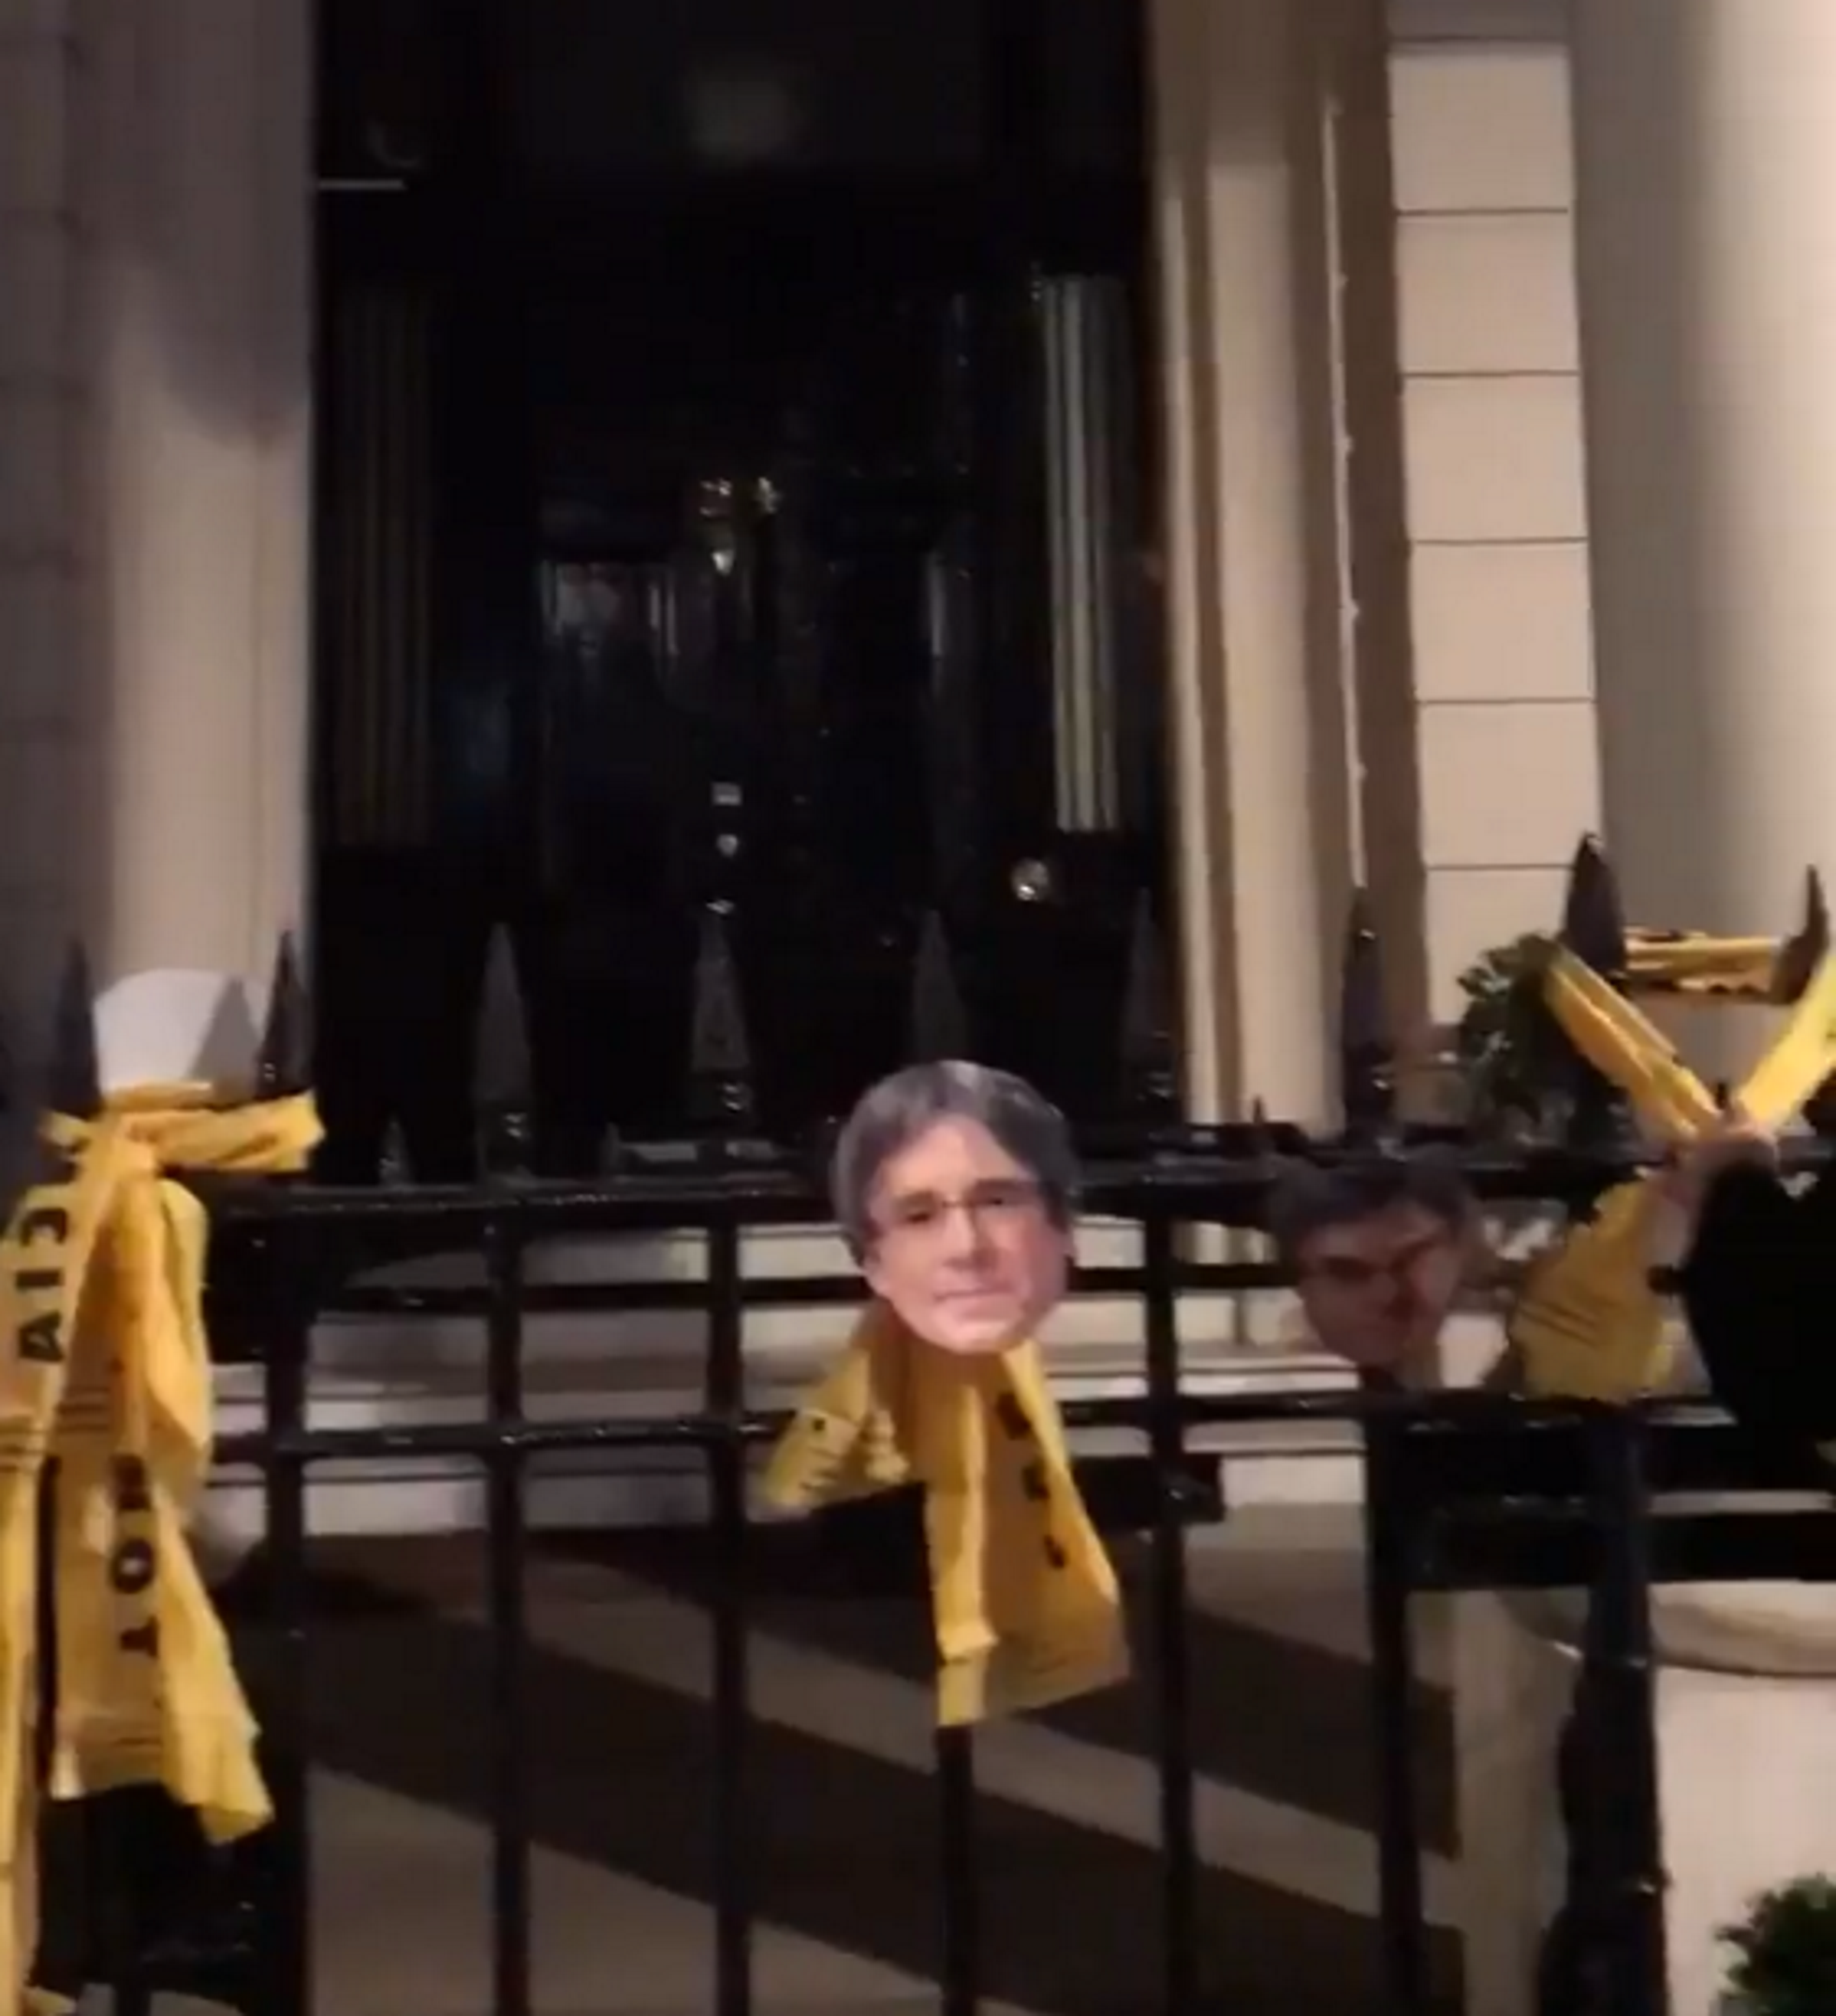 Acció a l'ambaixada d'Espanya a Londres: llaços grocs i cares de Puigdemont